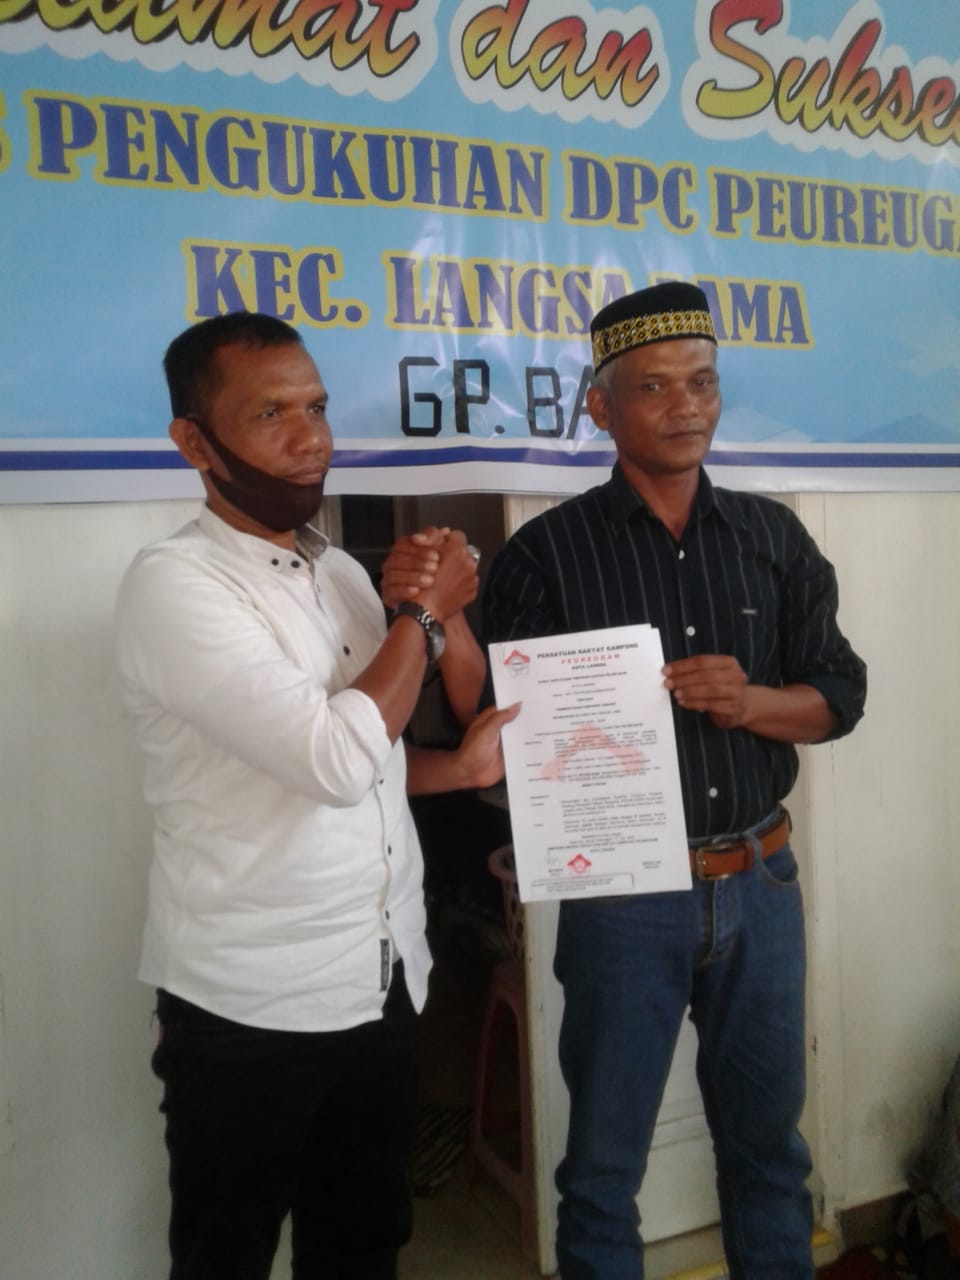 LSM Peureugam Akan Kembangkan Sayap Bentuk DPC di Lima Kecamatan